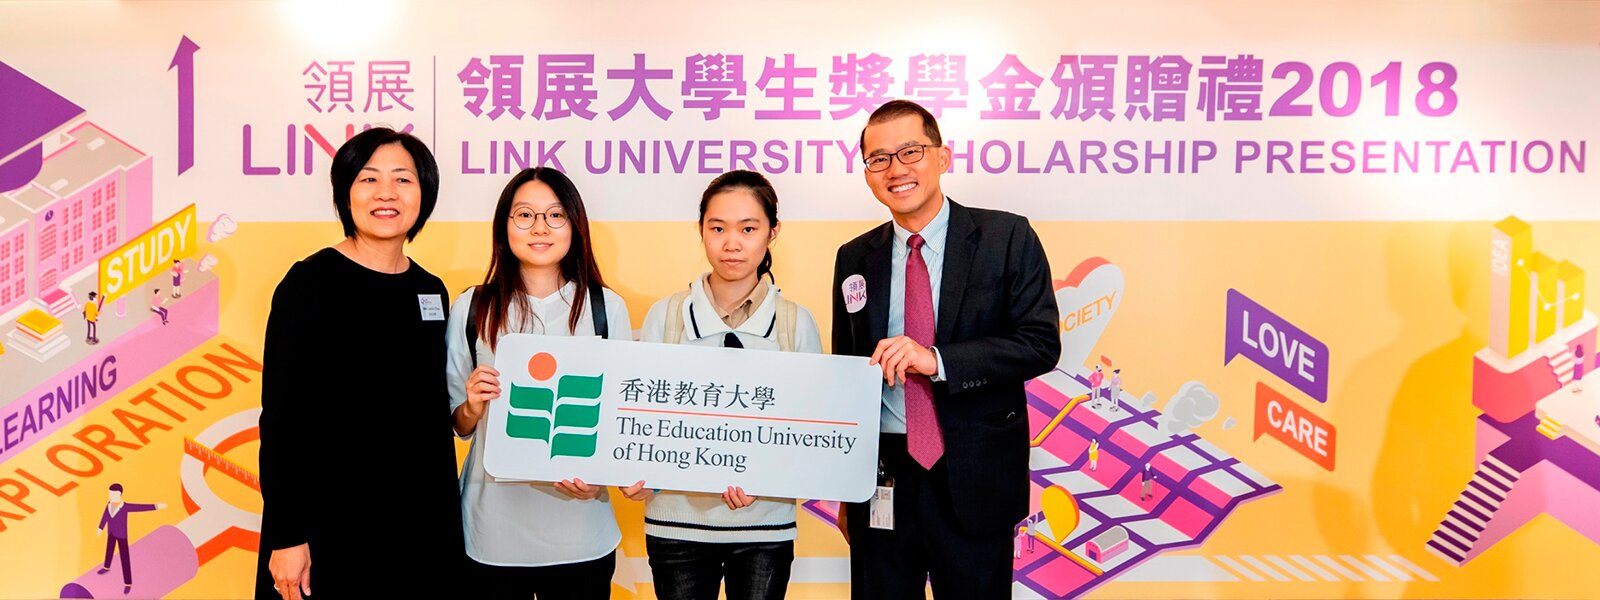 EdUHK Students Awarded the Link University Scholarship